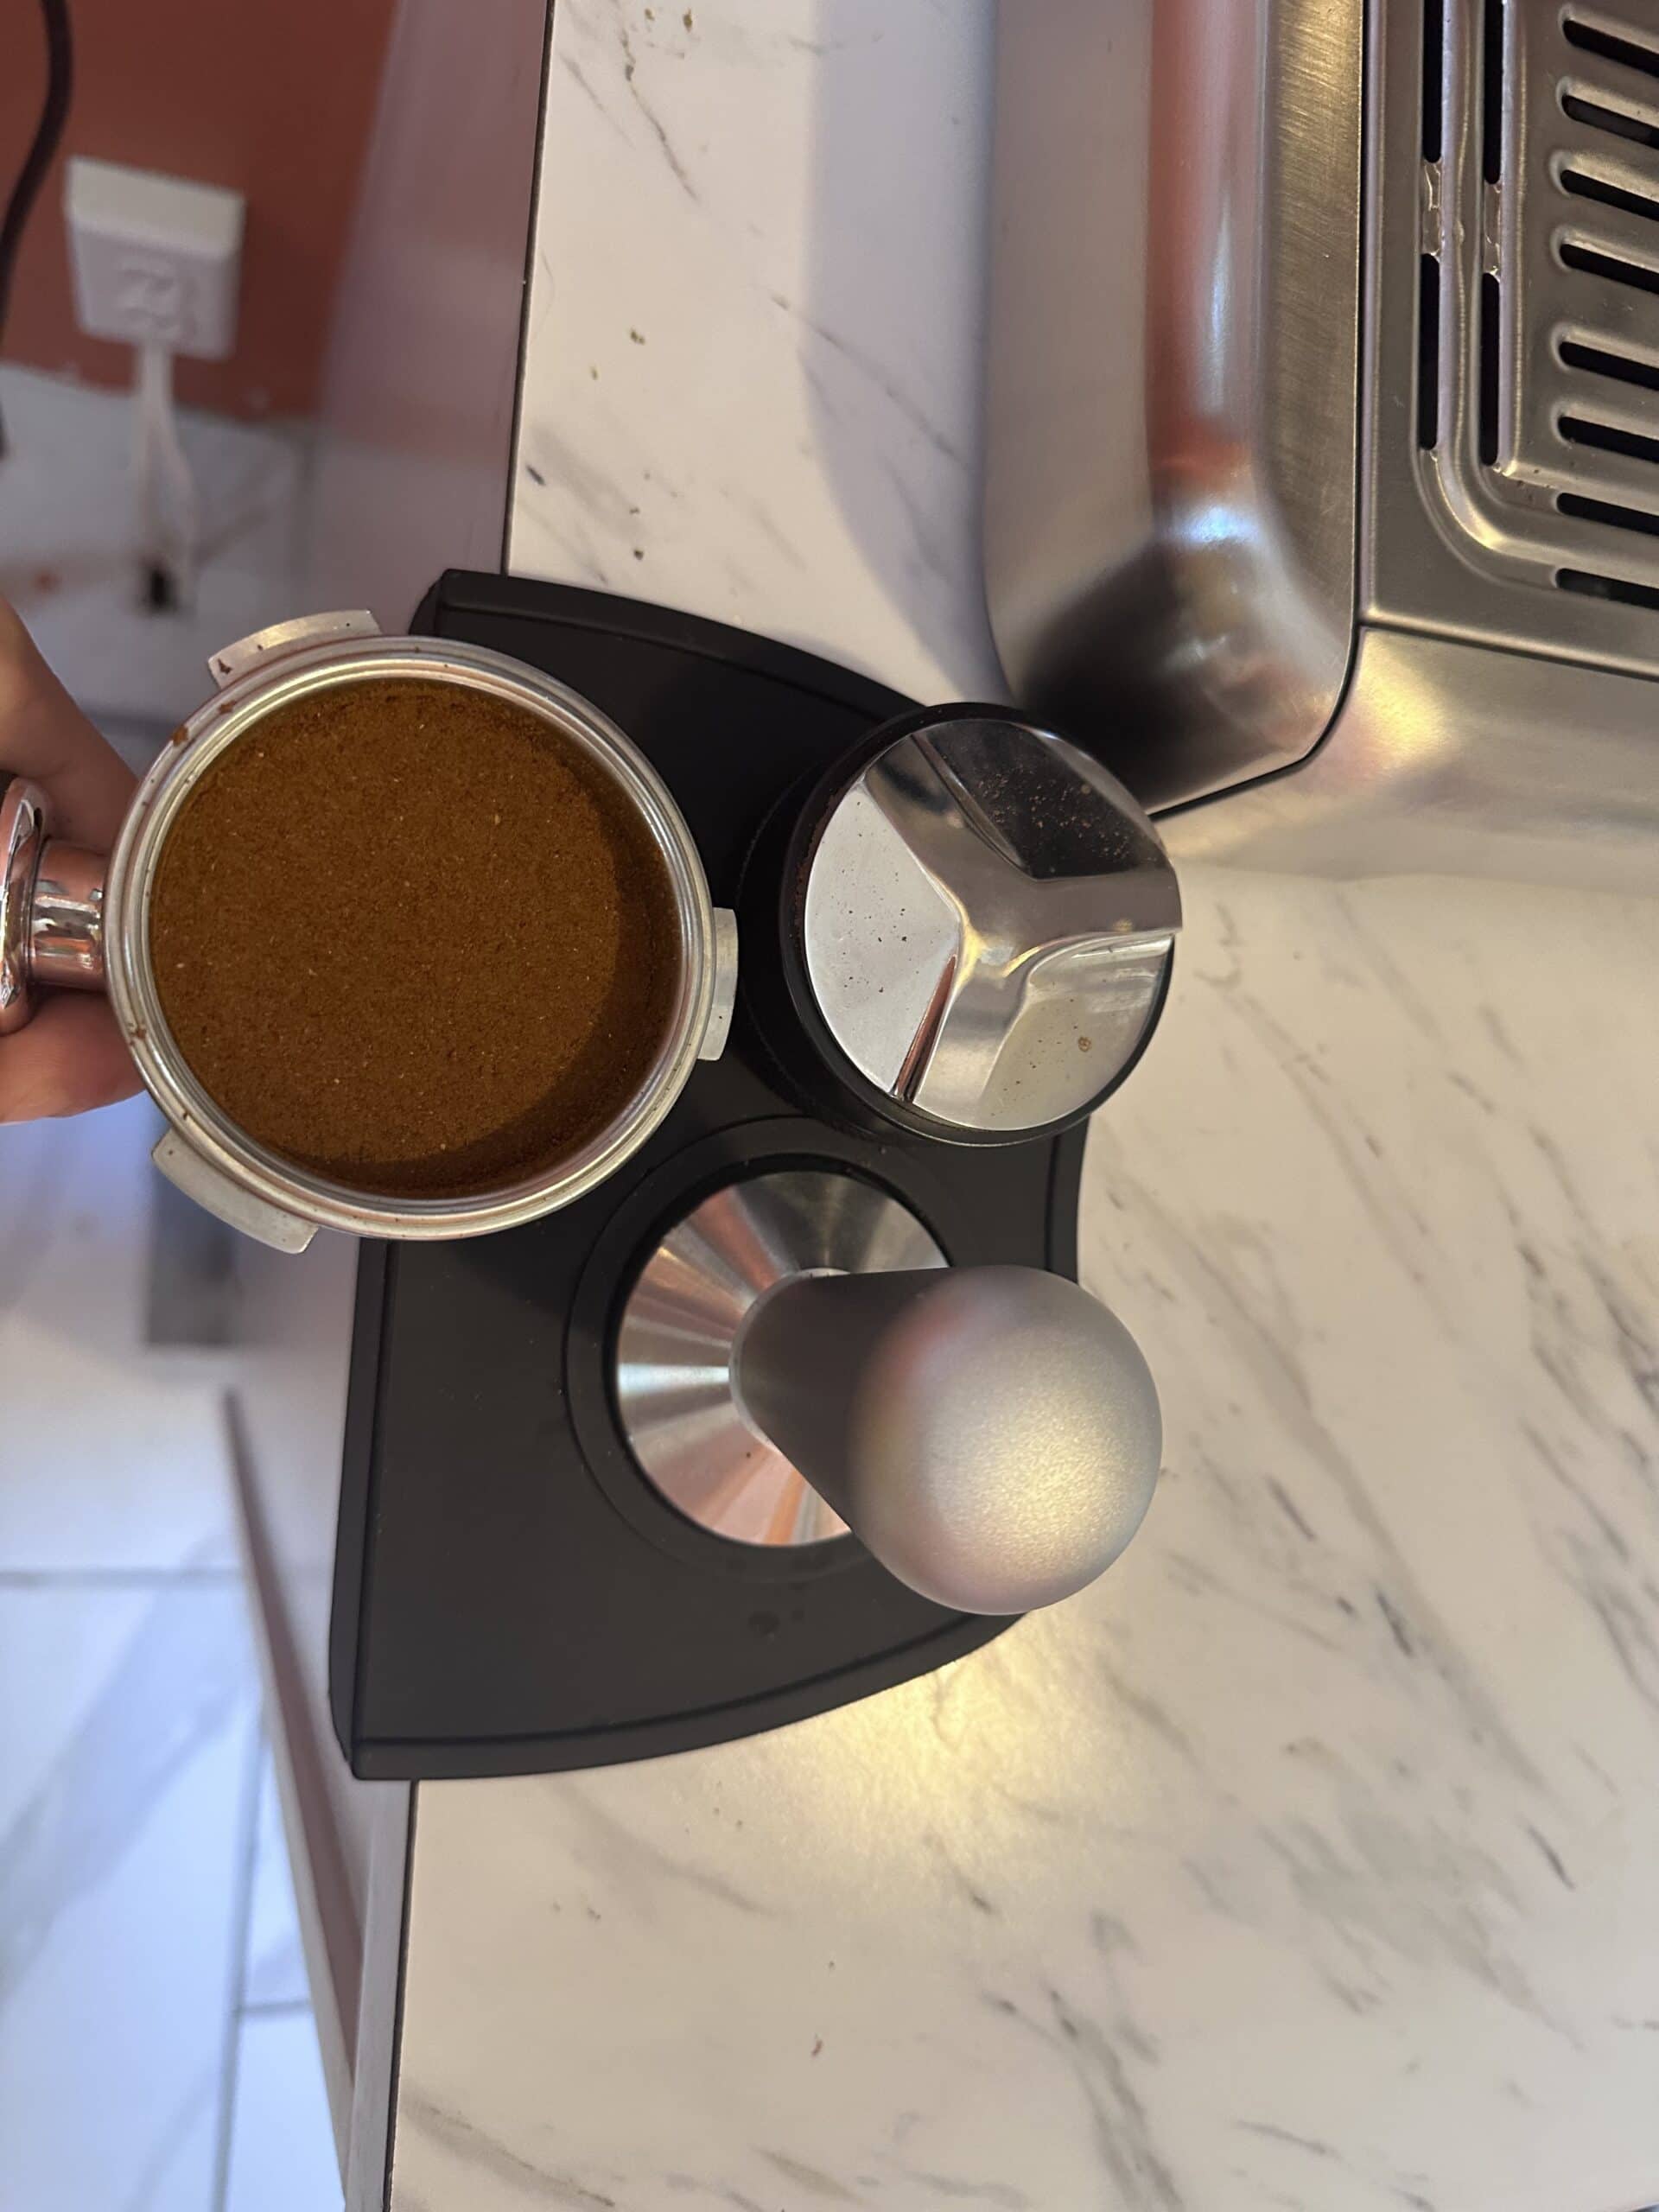 Filter Holder from Casabrews Espresso Machine